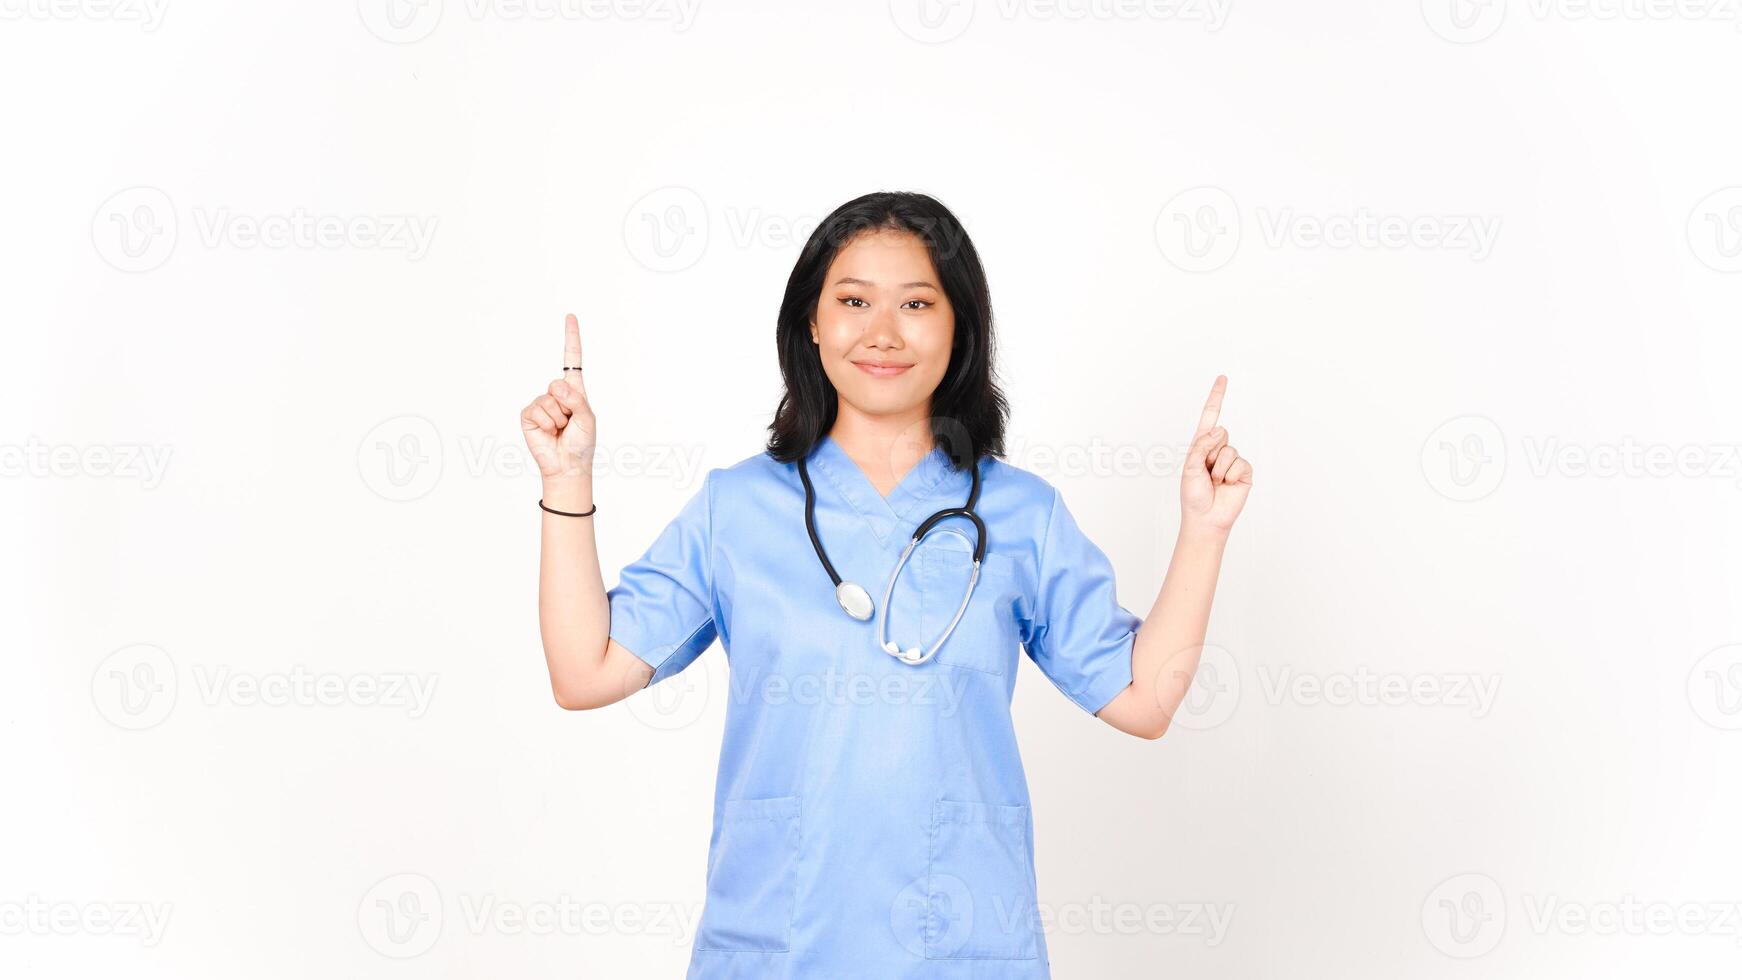 joven asiático hembra médico señalando al revés Copiar espacio aislado en blanco antecedentes foto